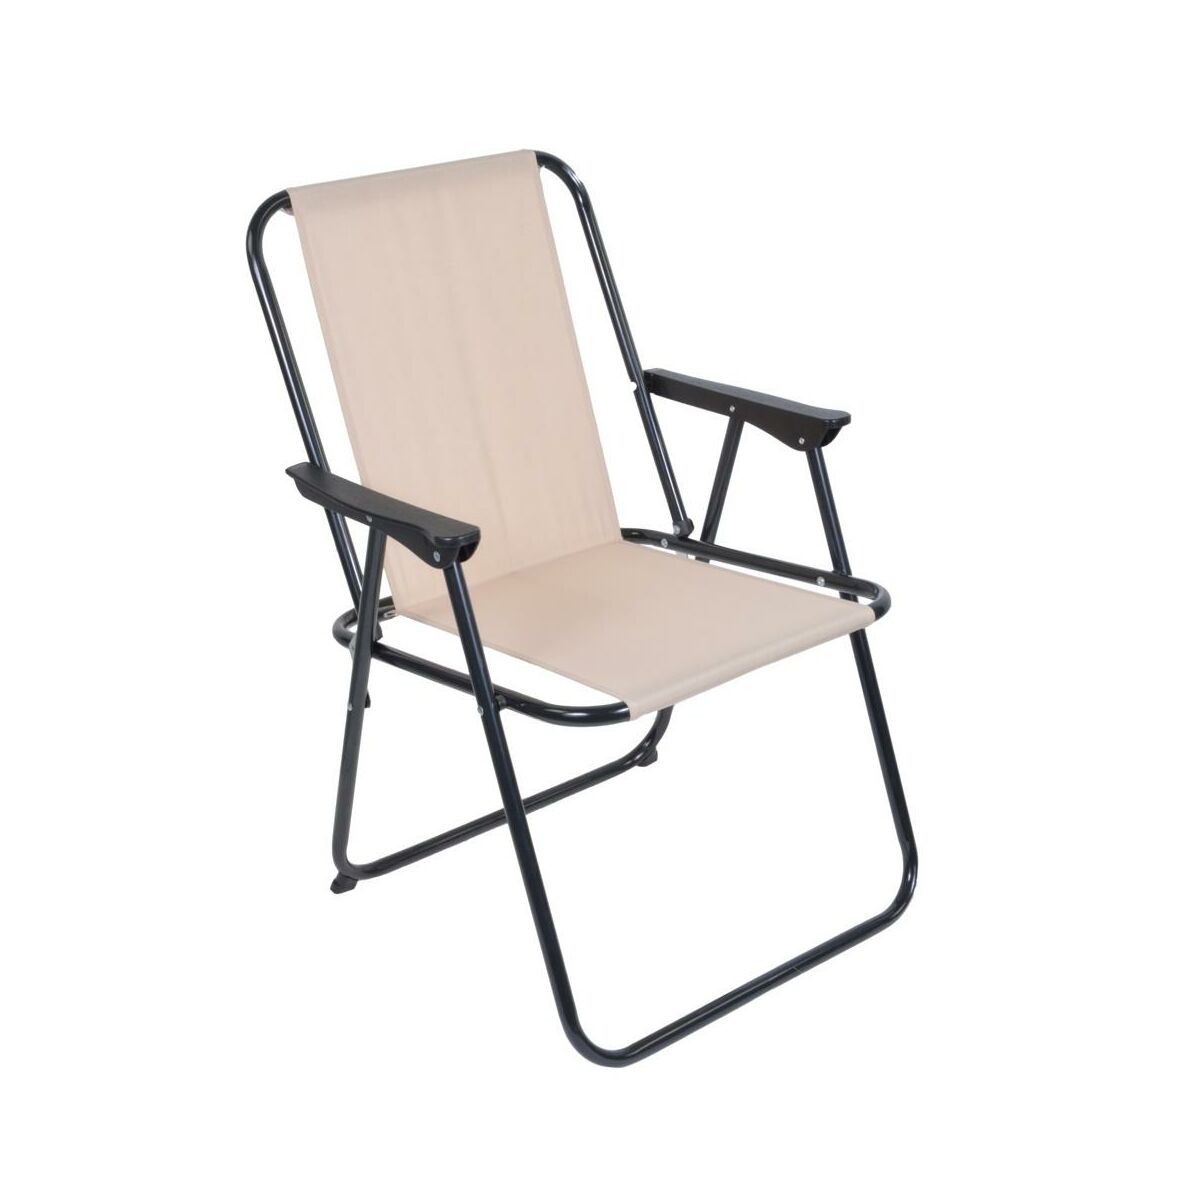 Krzeslo Ogrodowe Mix Krzesla Fotele Lawki Ogrodowe W Atrakcyjnej Cenie W Sklepach Leroy Merlin